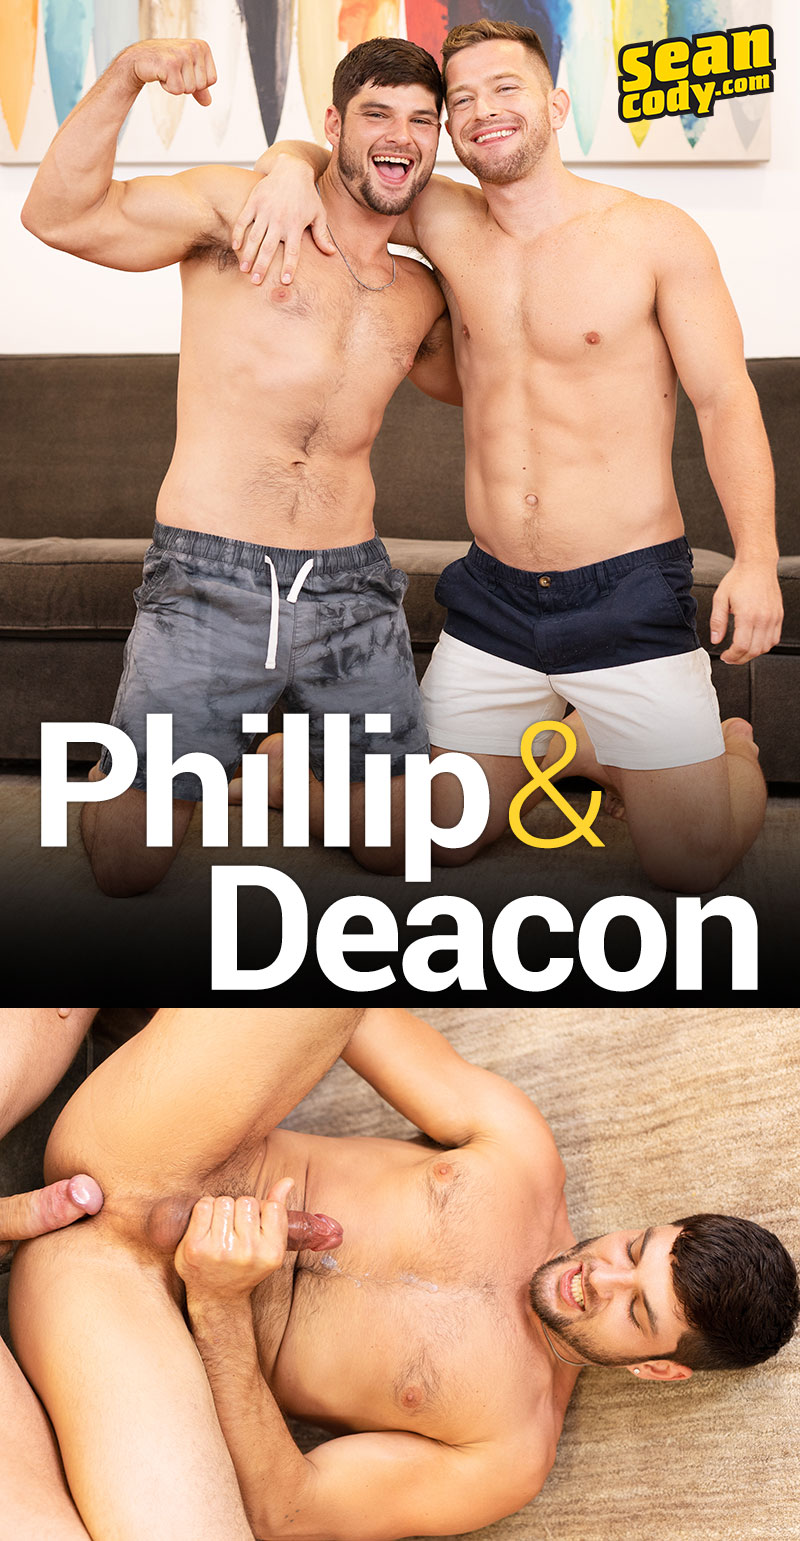 Deacon Phillip SeanCody